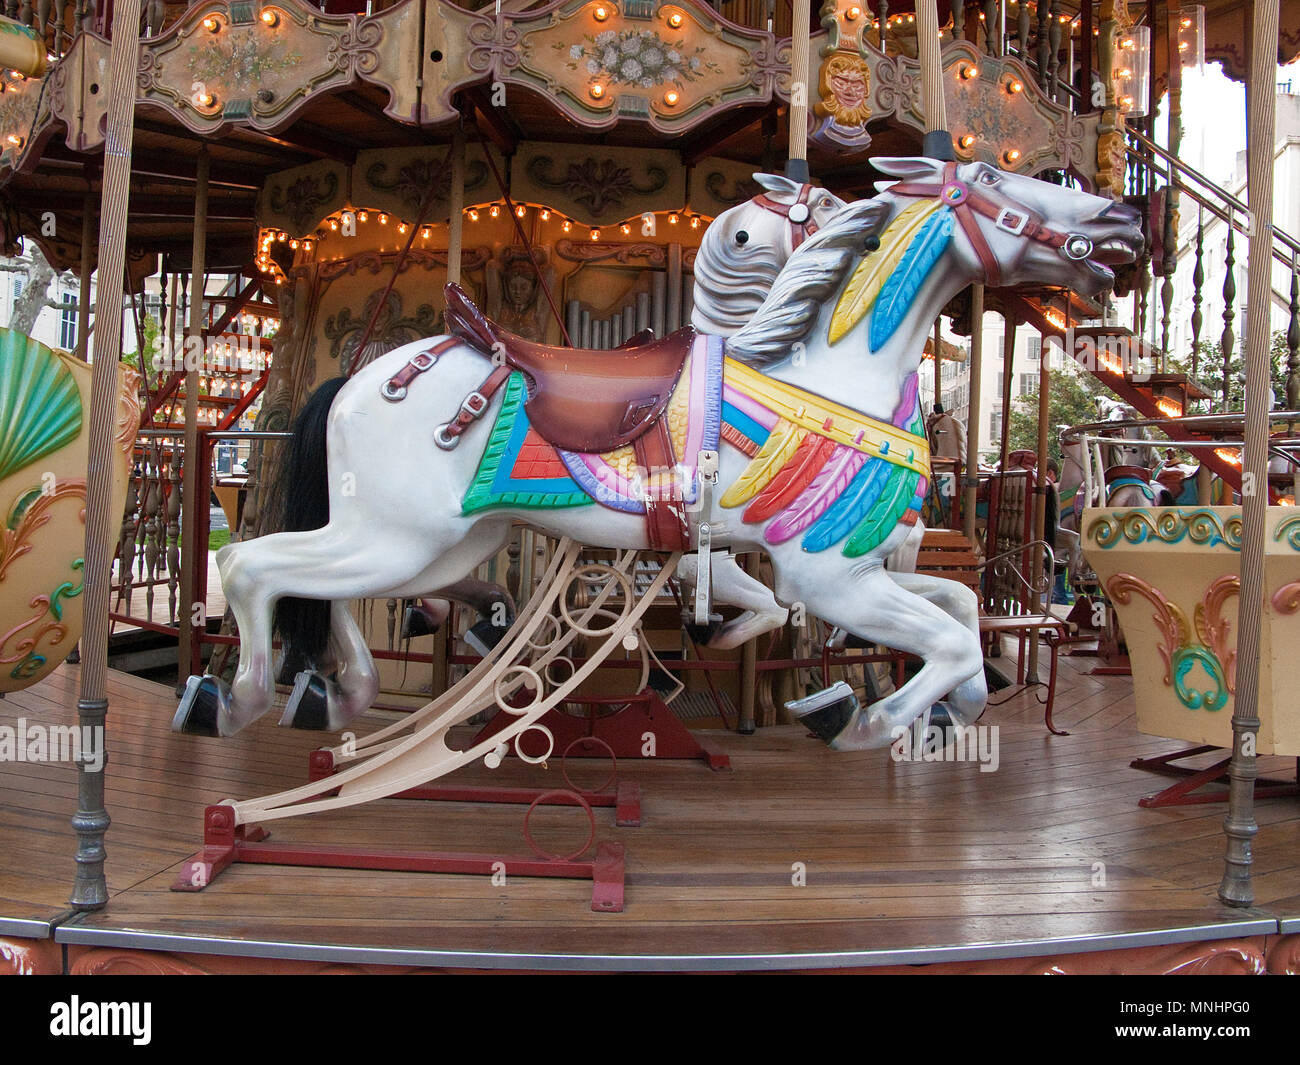 Carousel horse ou merry-go-round cheval sur une aire de merry-go-round at old town of, Marseille, Bouches-du-Rhône, Provence-Alpes-Côte d'Azur, France Banque D'Images